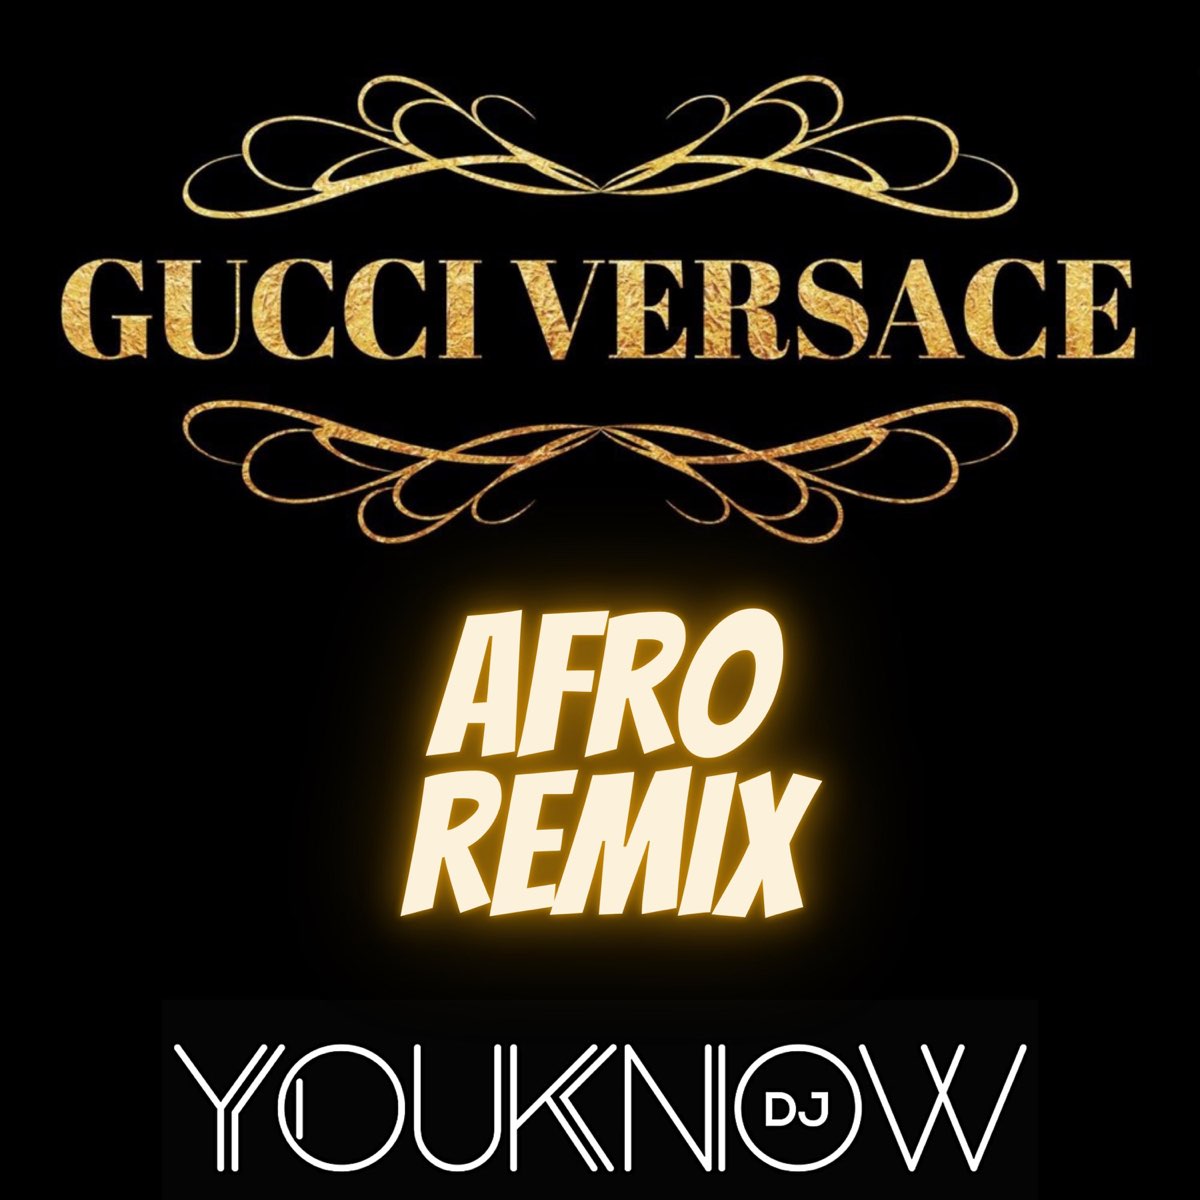 Gucci Versace (Afro Remix) - Single – Album par DJ Youknow – Apple Music